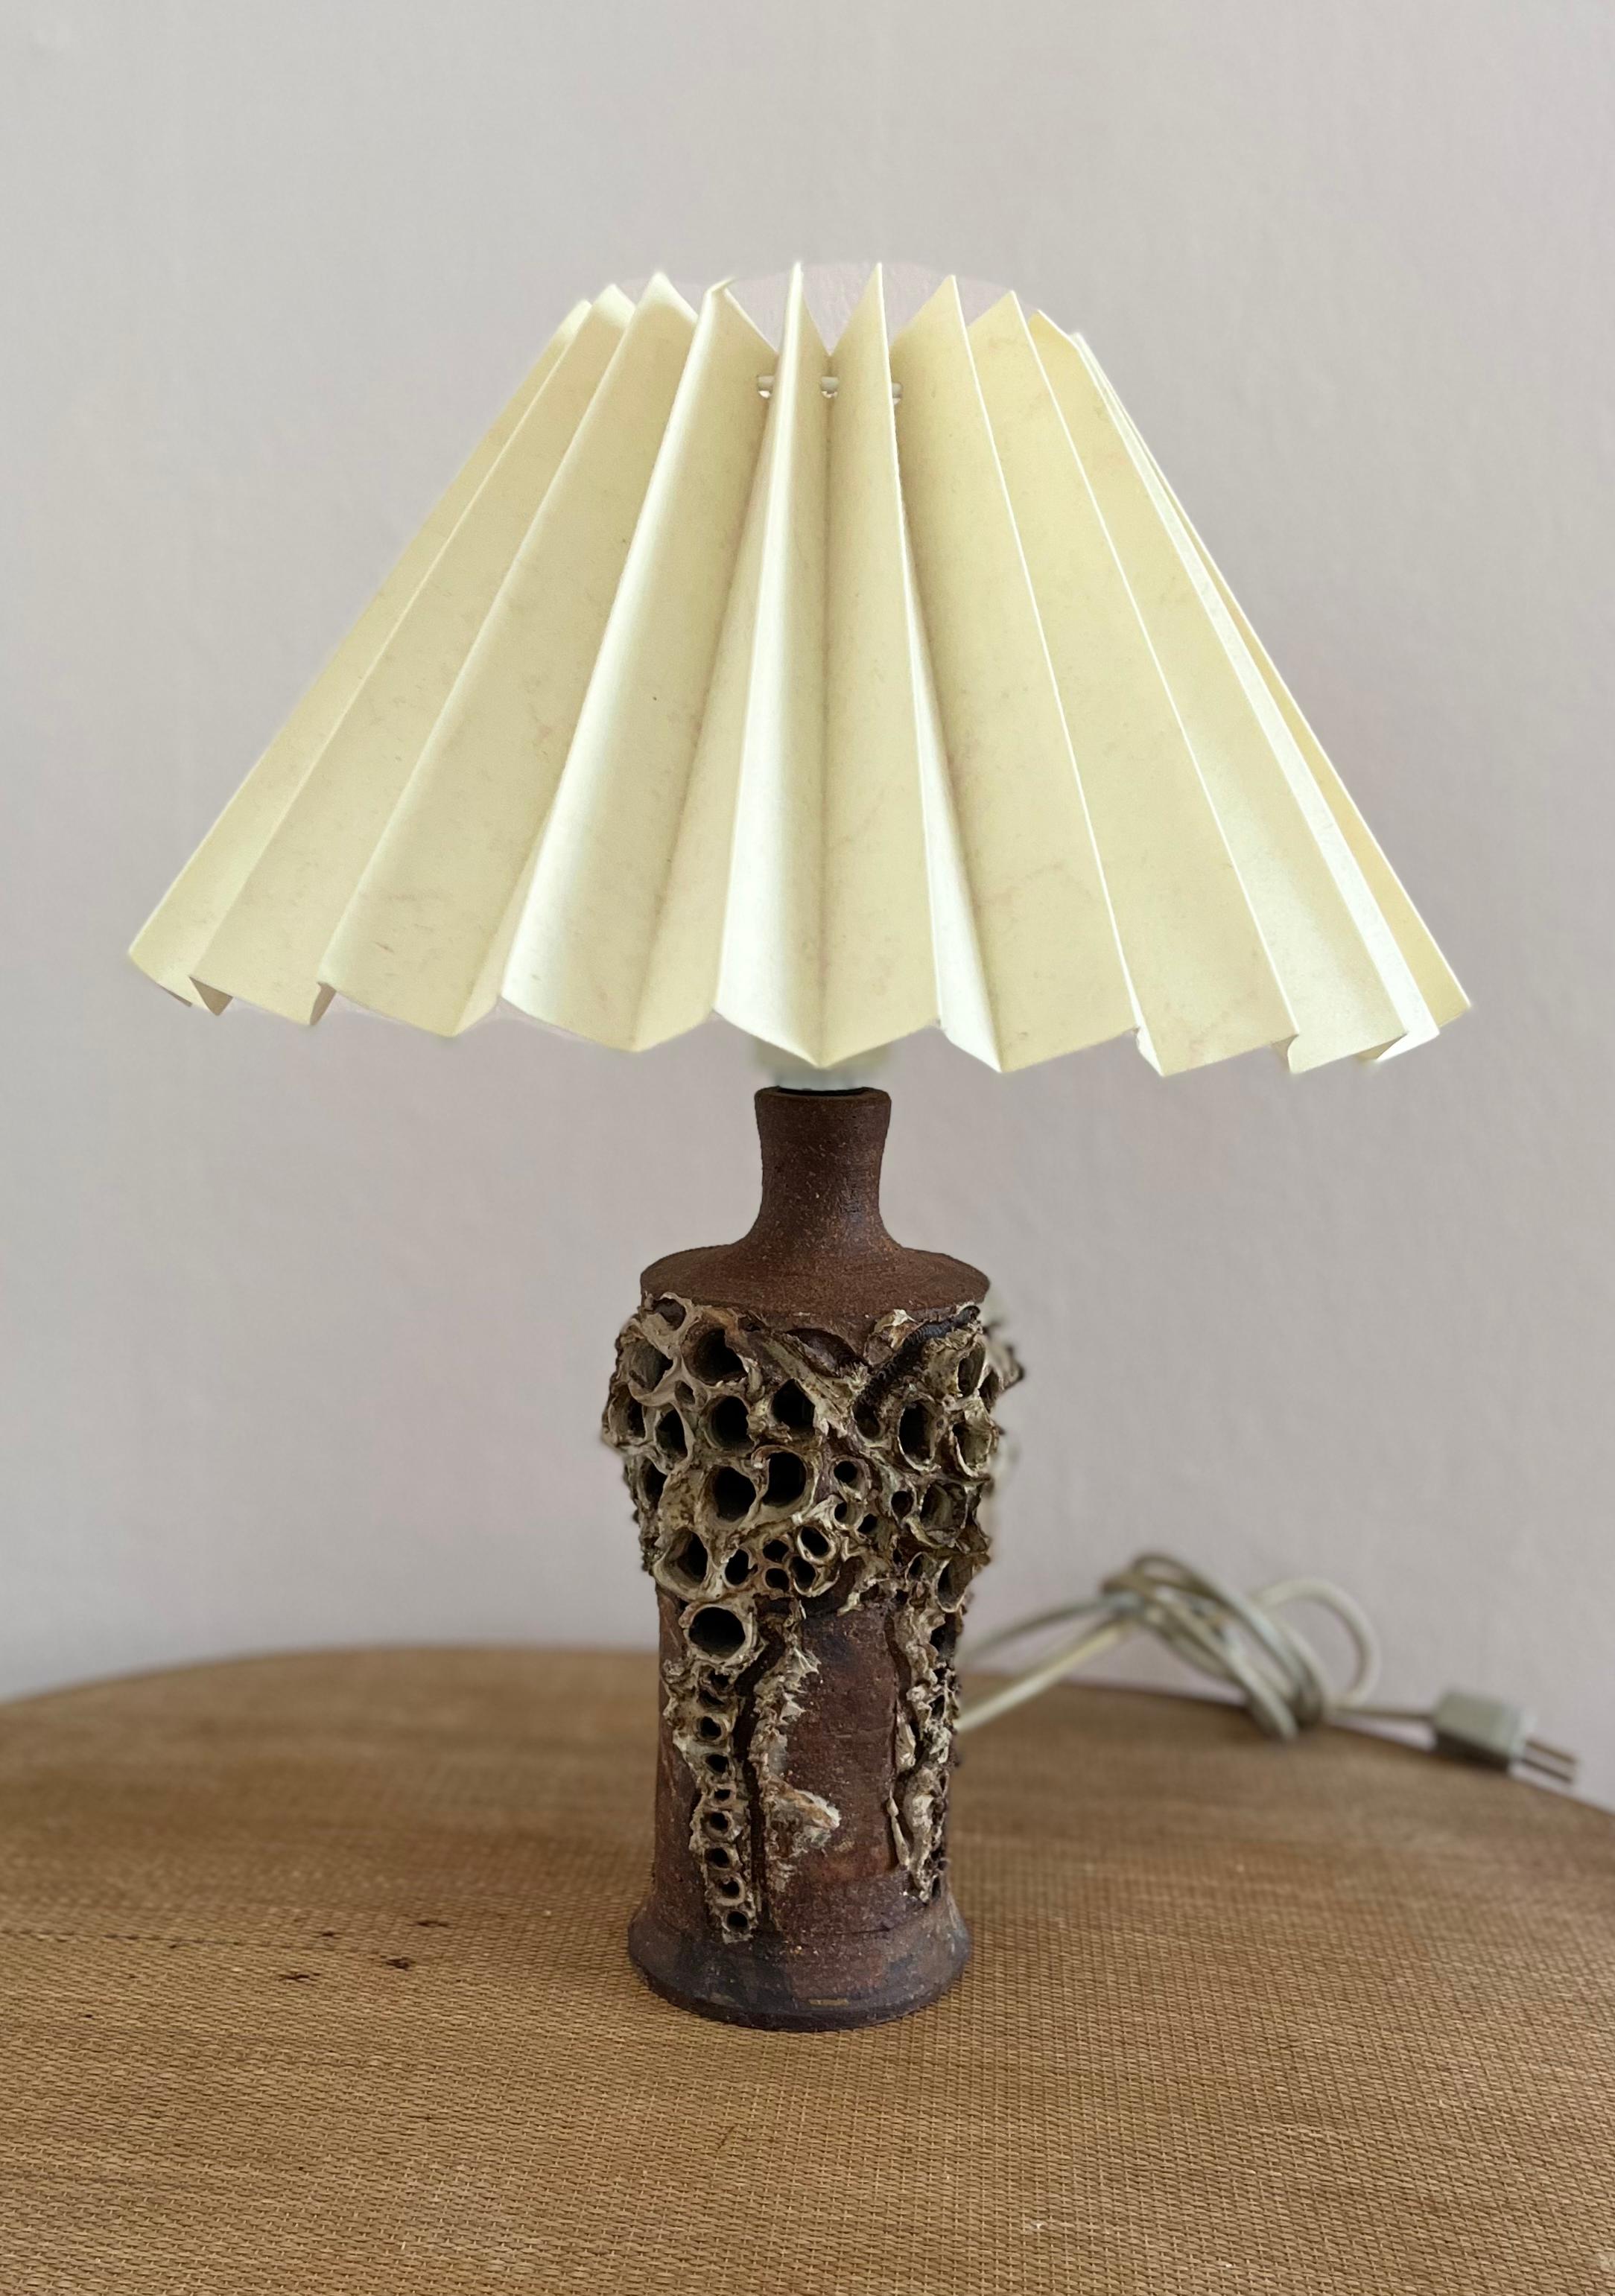 Lampe de table danoise en céramique brutaliste des années 1960 par Bodil Marie Nielsen

Les connaisseurs reconnaîtront immédiatement cette table en céramique brutaliste des années 1960 comme l'œuvre de la Danoise Bodil Marie Nielsen. Magnifique,